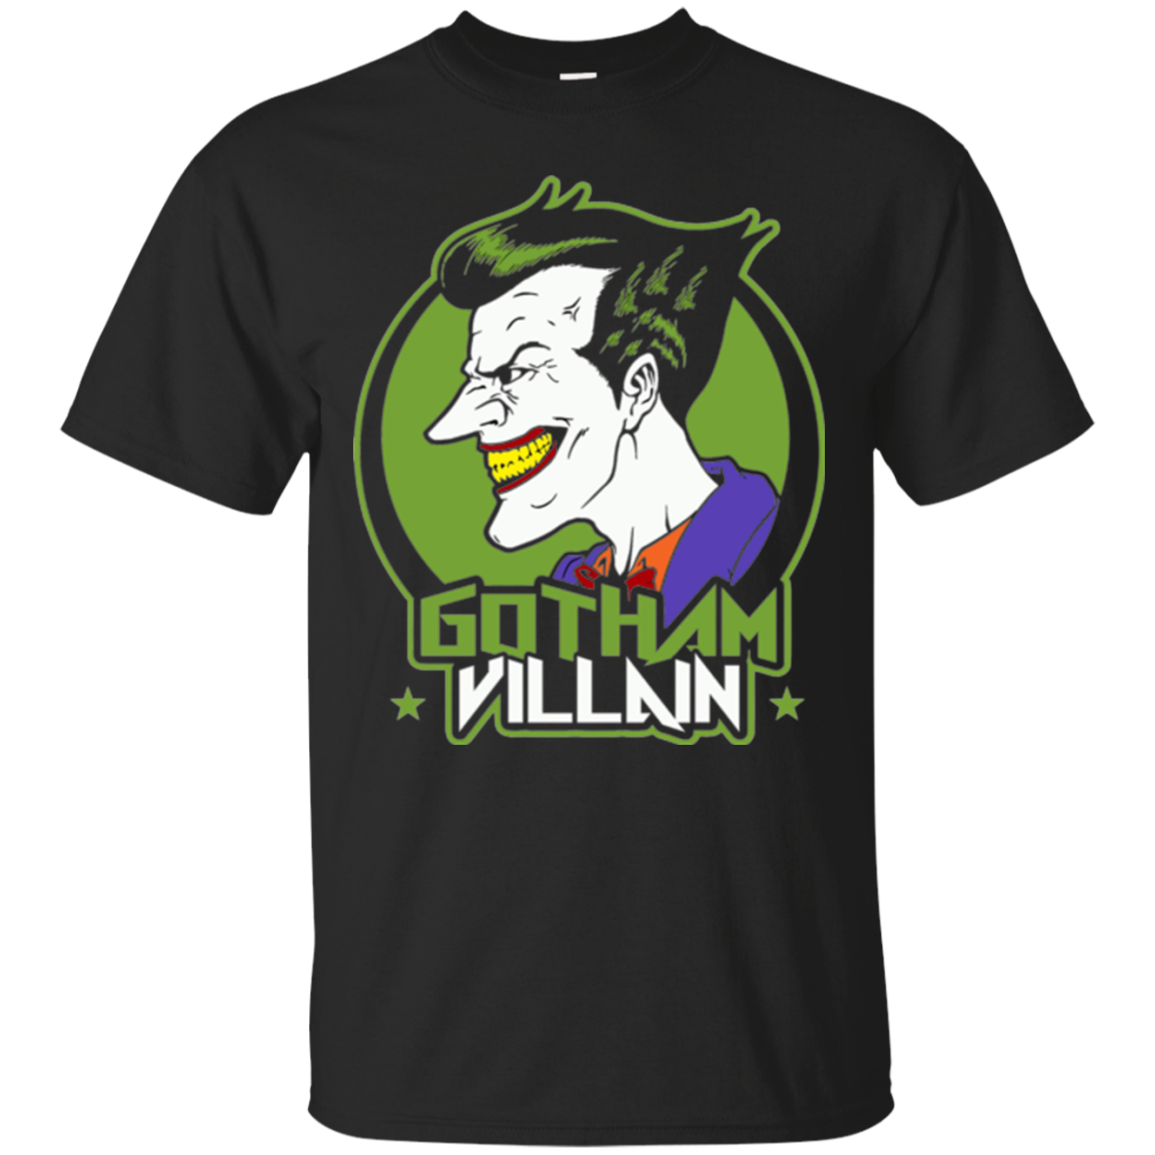 Villain T-Shirt